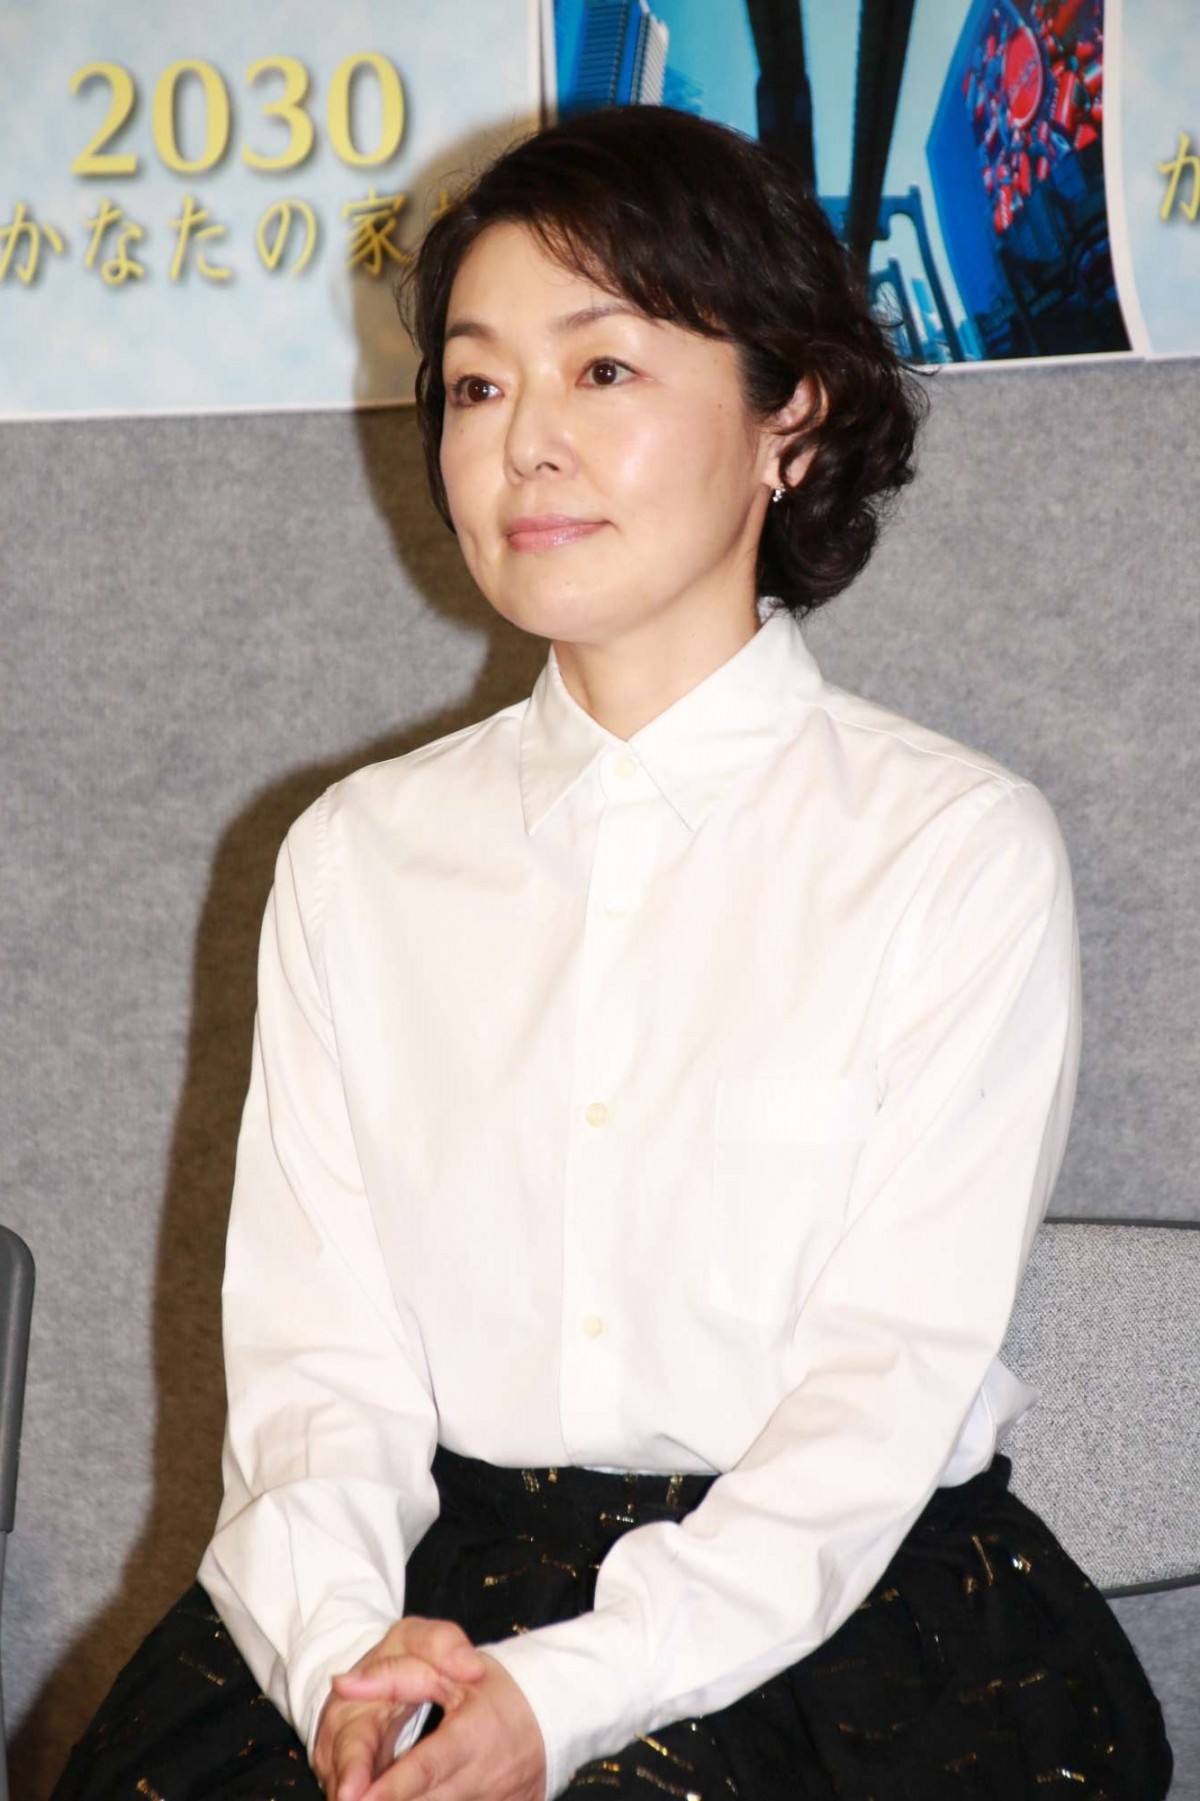 瑛太、未来の展望は「朝ドラか大河ドラマで主演」　NHK関係者にアピール